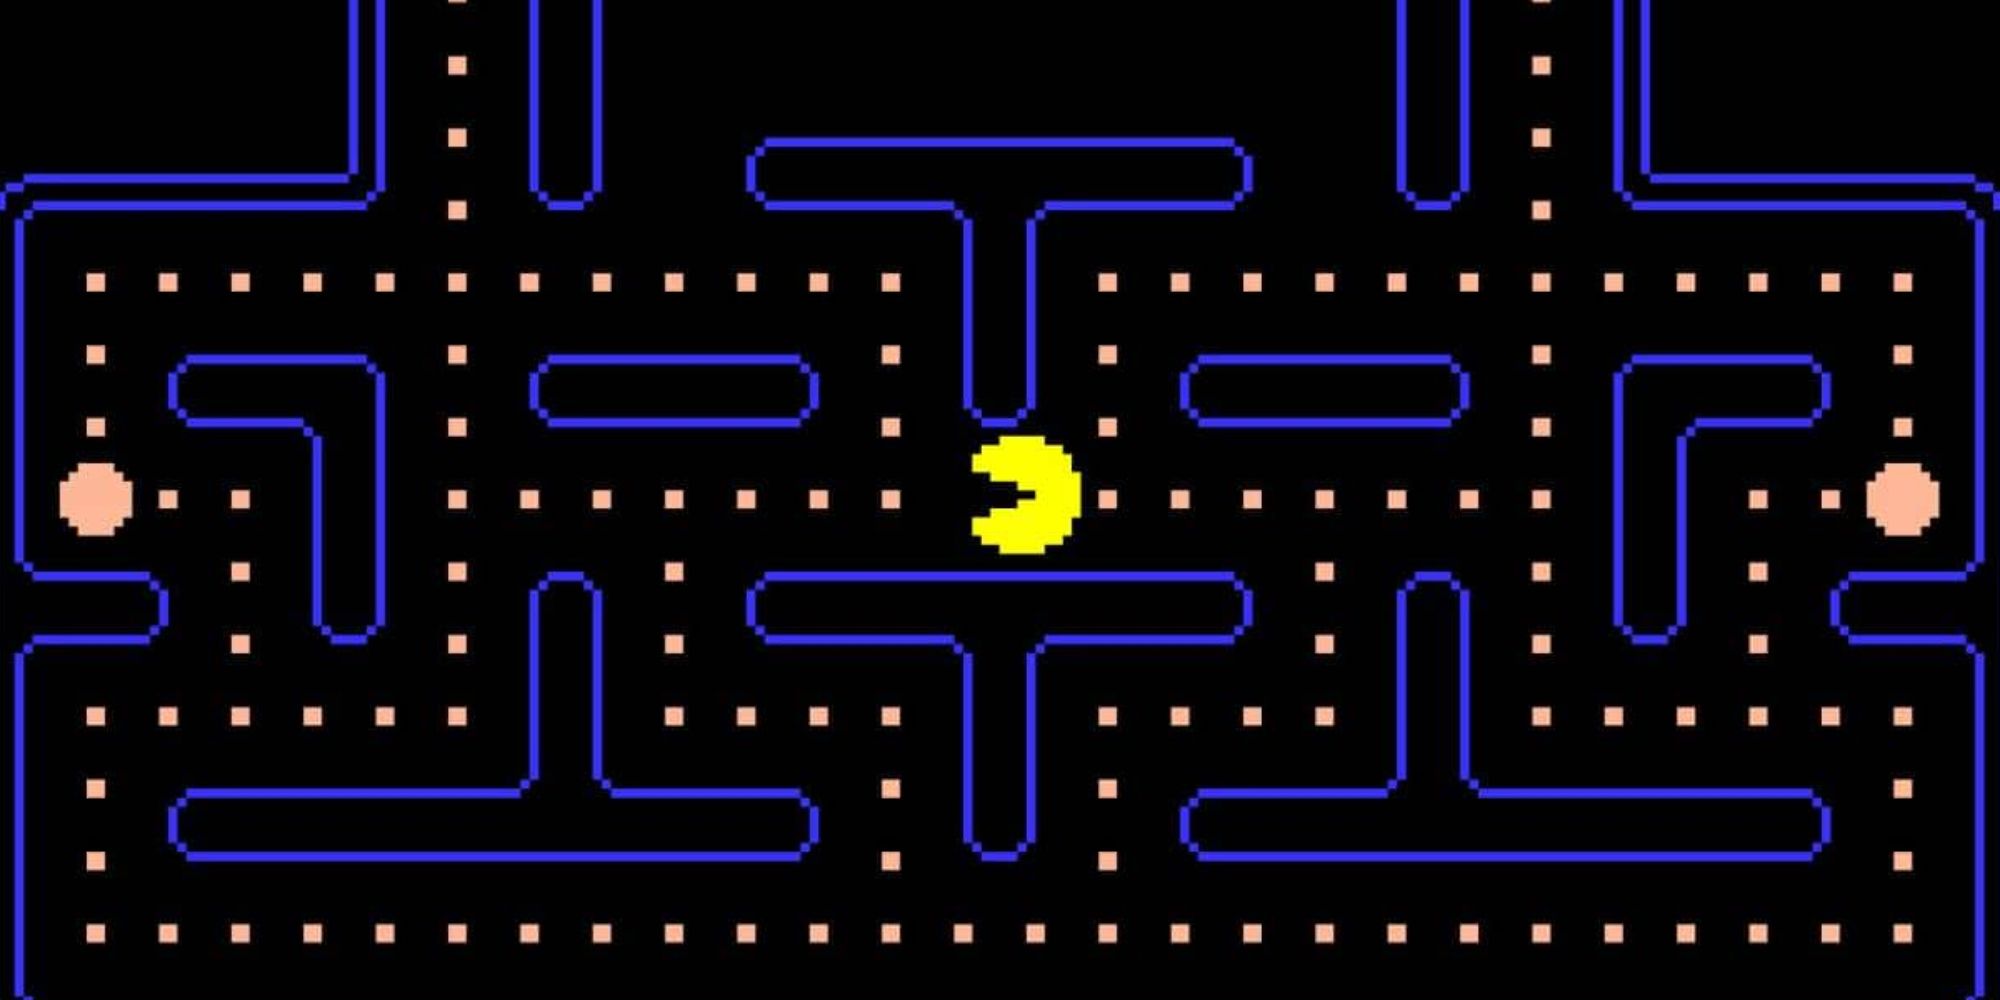 Pac-man Screenshot Of Starting Point